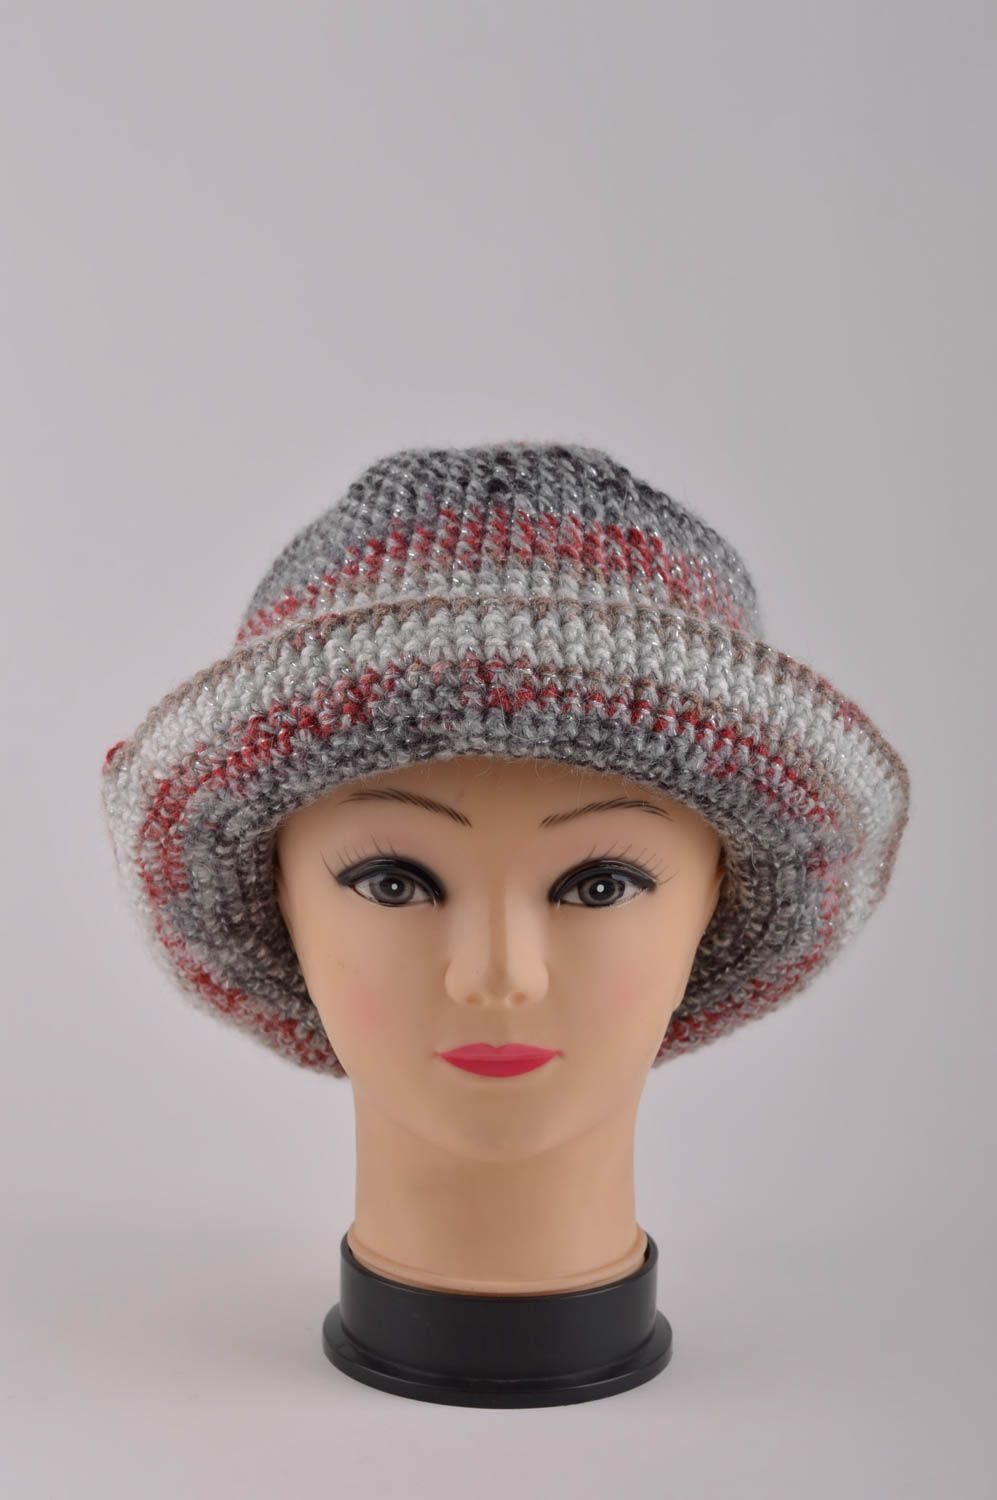 Designer hat fashion accessories for women ladies hat handmade crochet hat photo 3